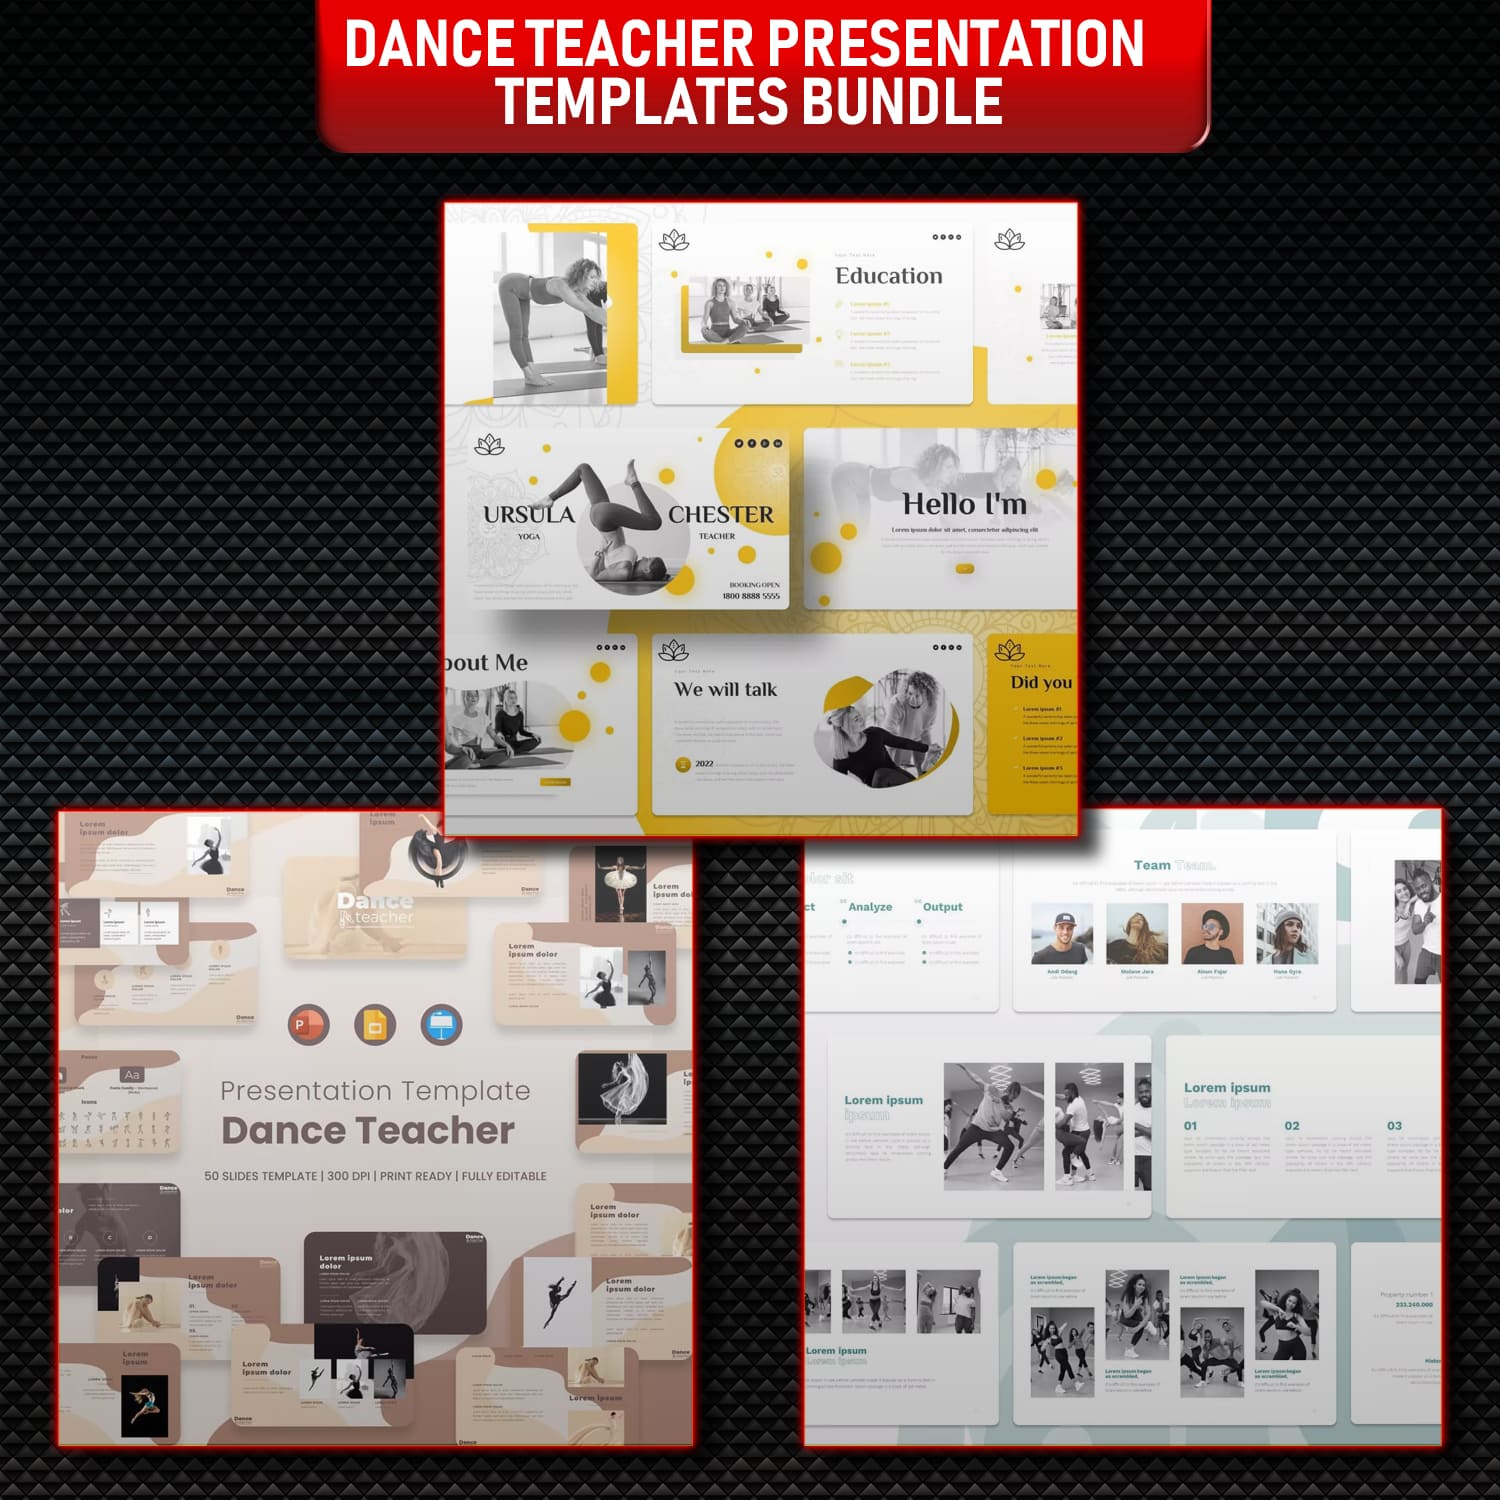 Preview dance teacher presentation templates bundle.